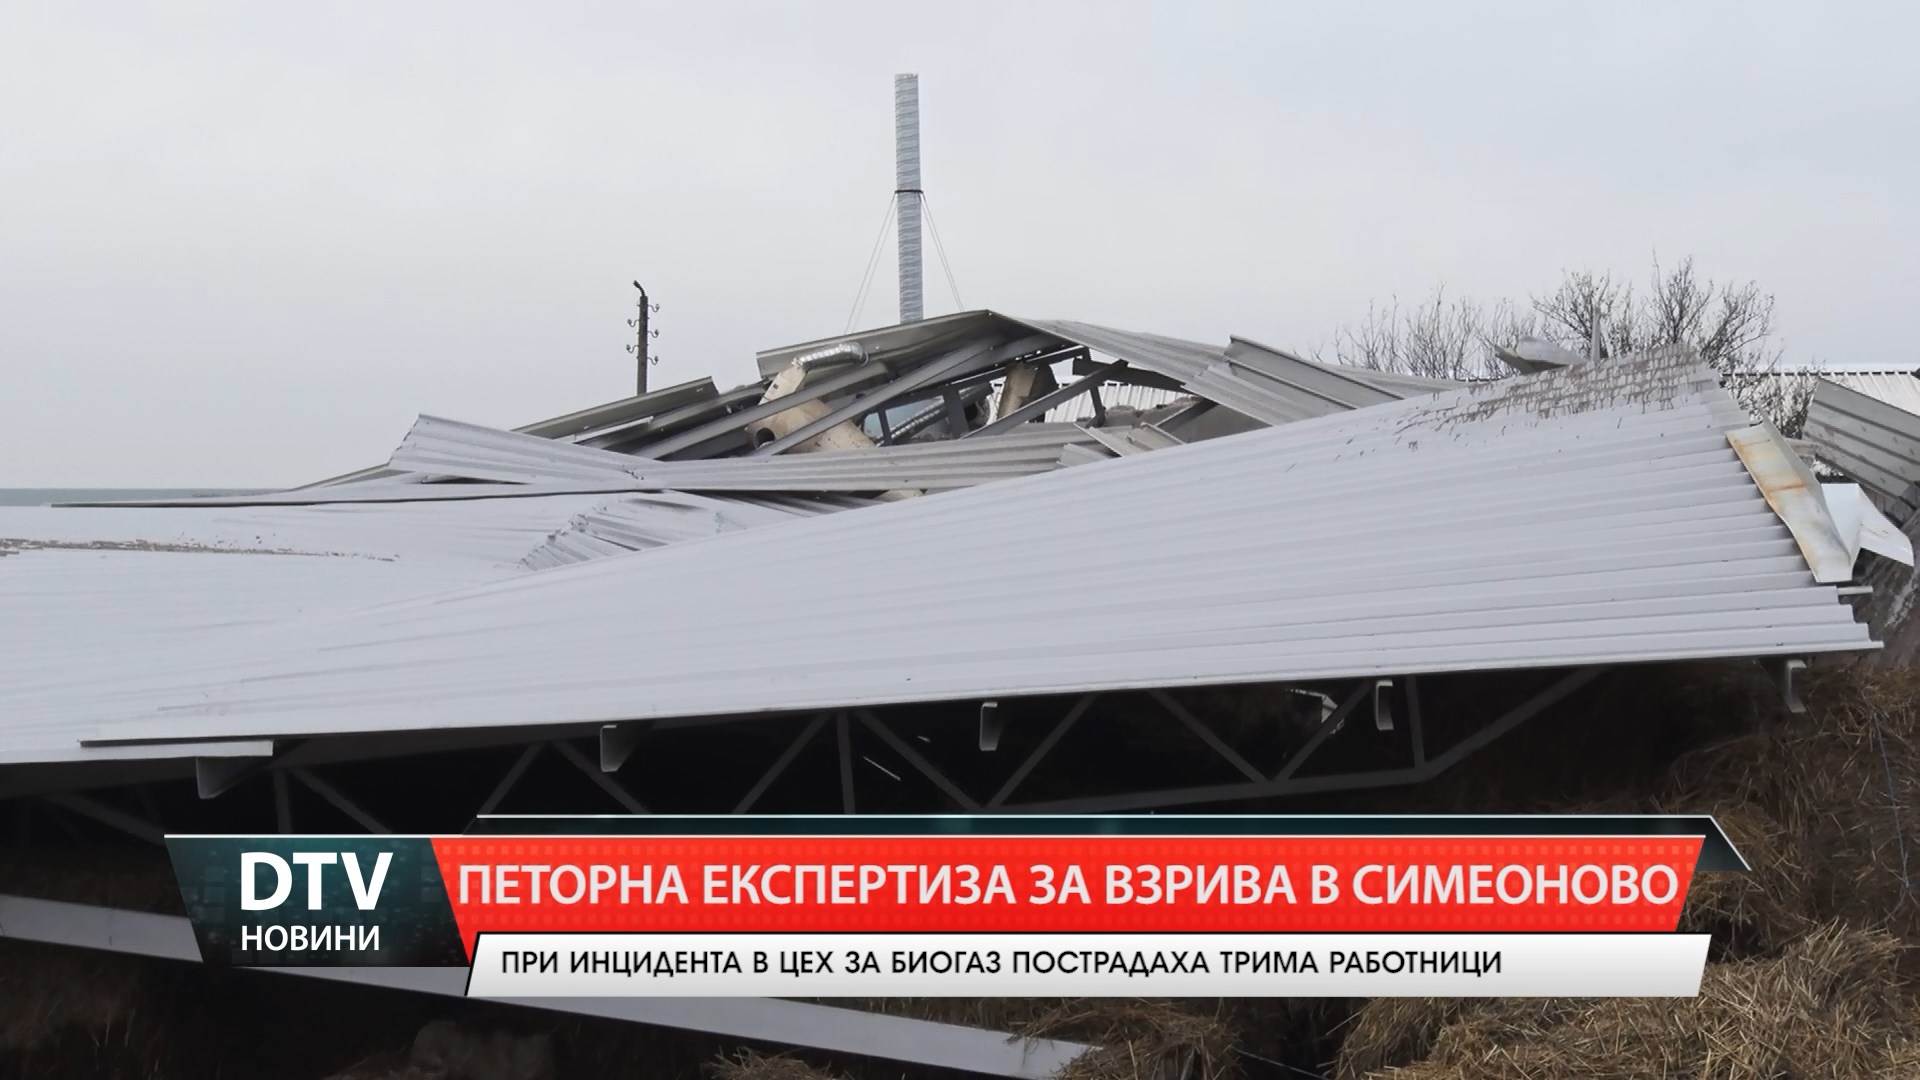 Назначена е петорна експертиза за взрива в Симеоново